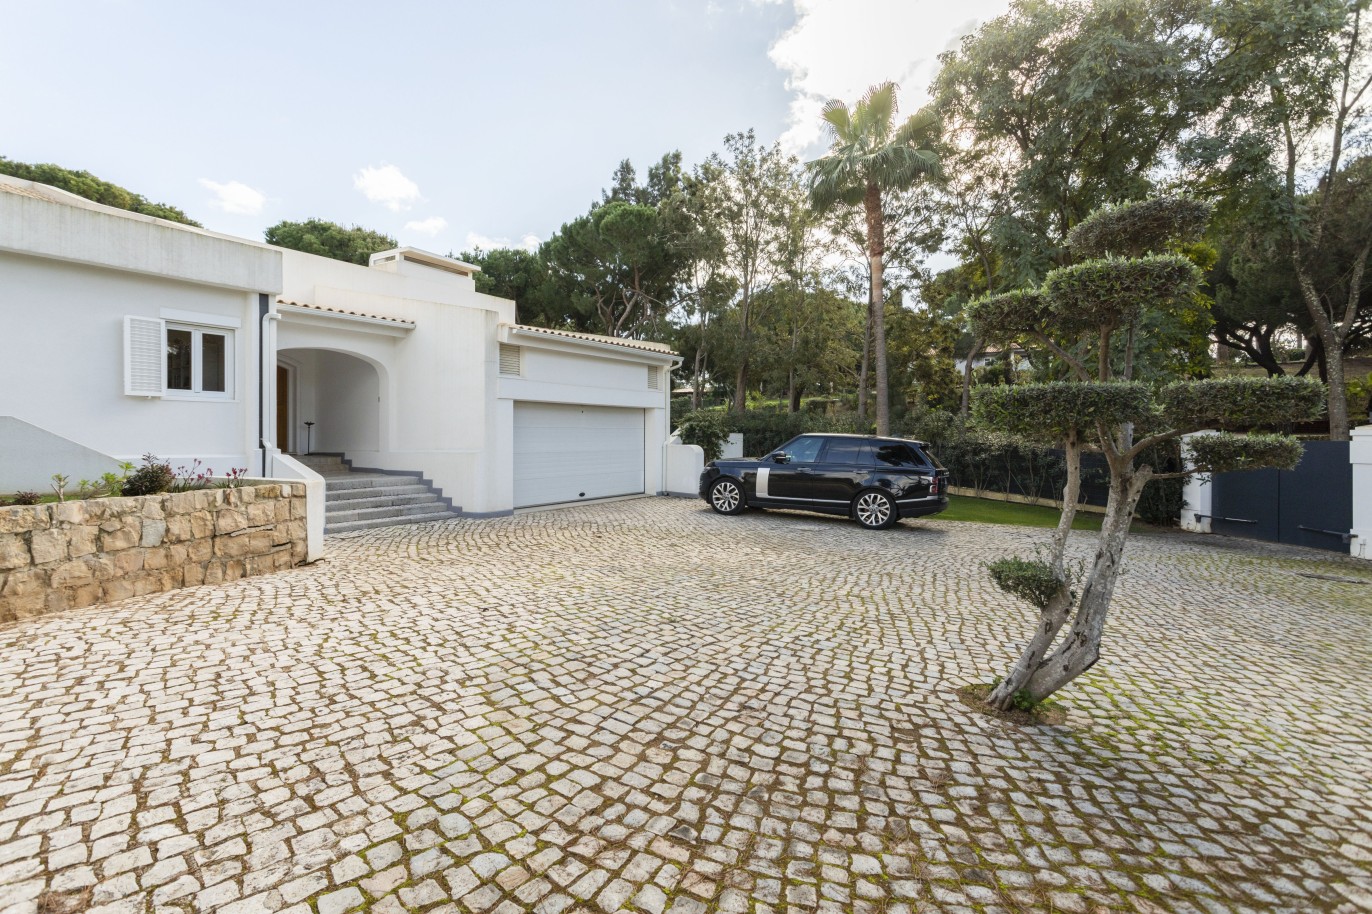 Moradia de luxo V5+2 com piscina, para venda em Vilamoura, Algarve_248112